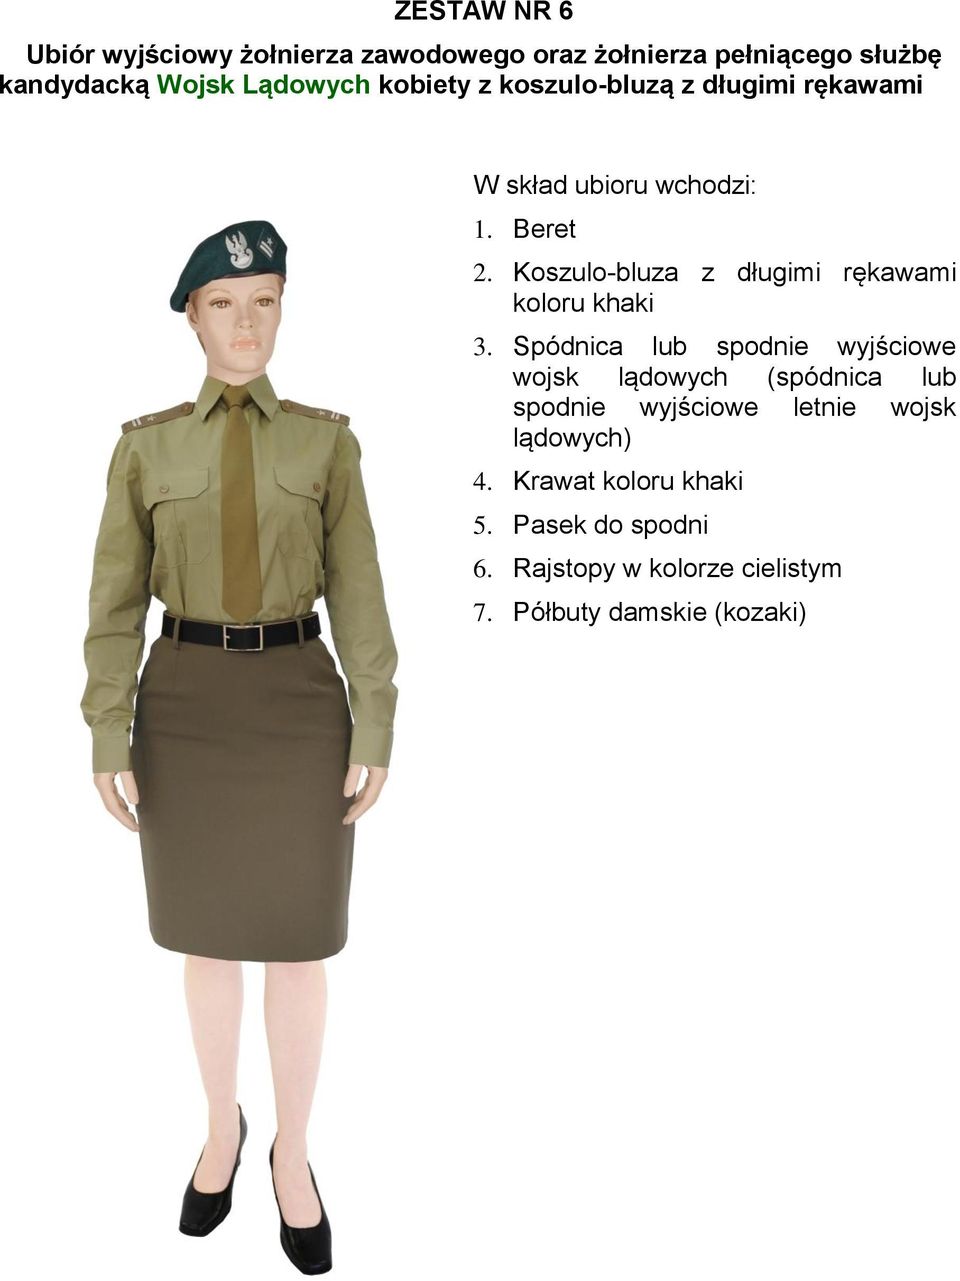 Spódnica lub spodnie wyjściowe wojsk lądowych (spódnica lub spodnie wyjściowe